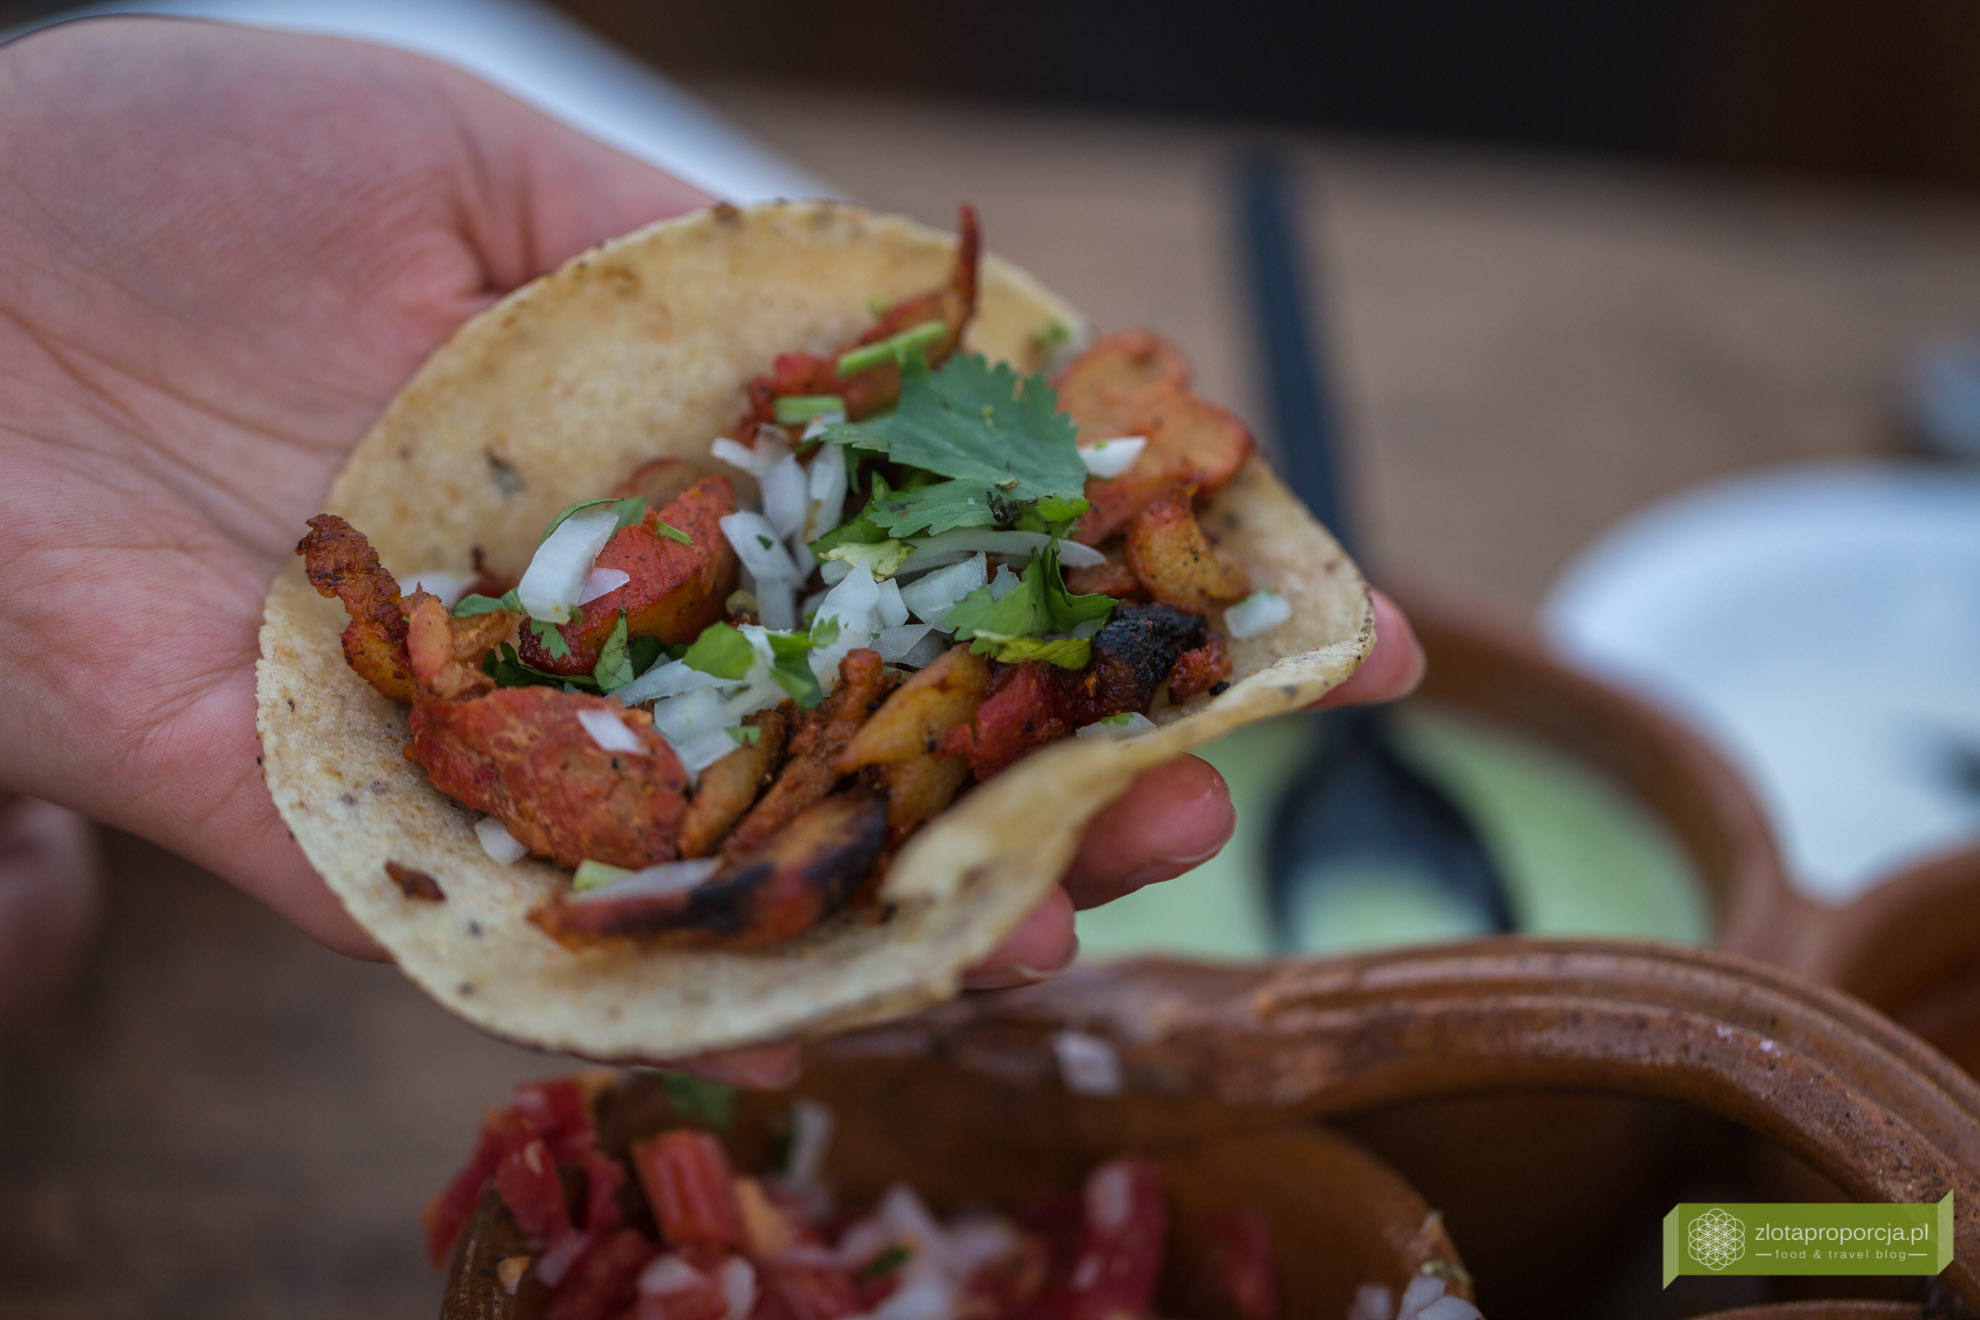 kuchnia Jukatanu, kuchnia meksykańska, meksykańskie potrawy, potrawy na Jukatanie, meksykański street food, tacos, 